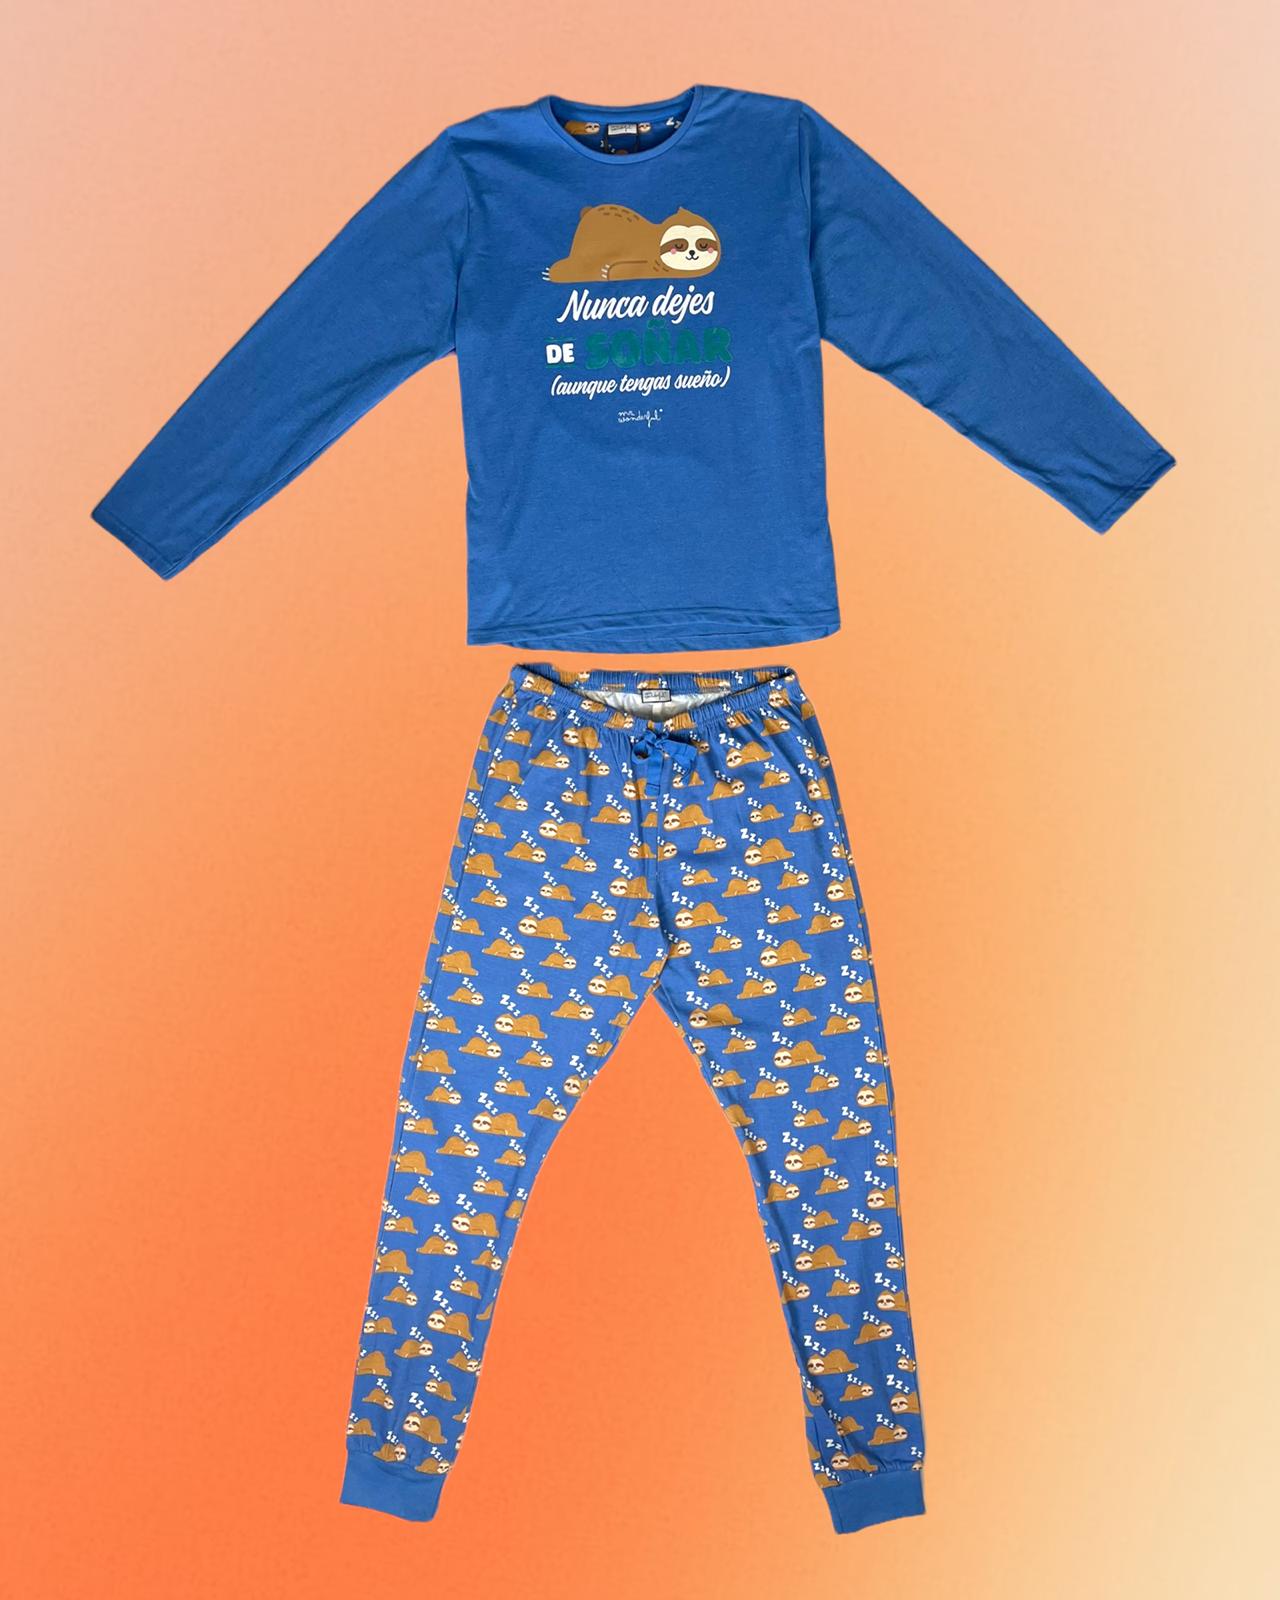 Mr. Wonderful | Pijama azul Nunca dejes de soñar – Da Ponte